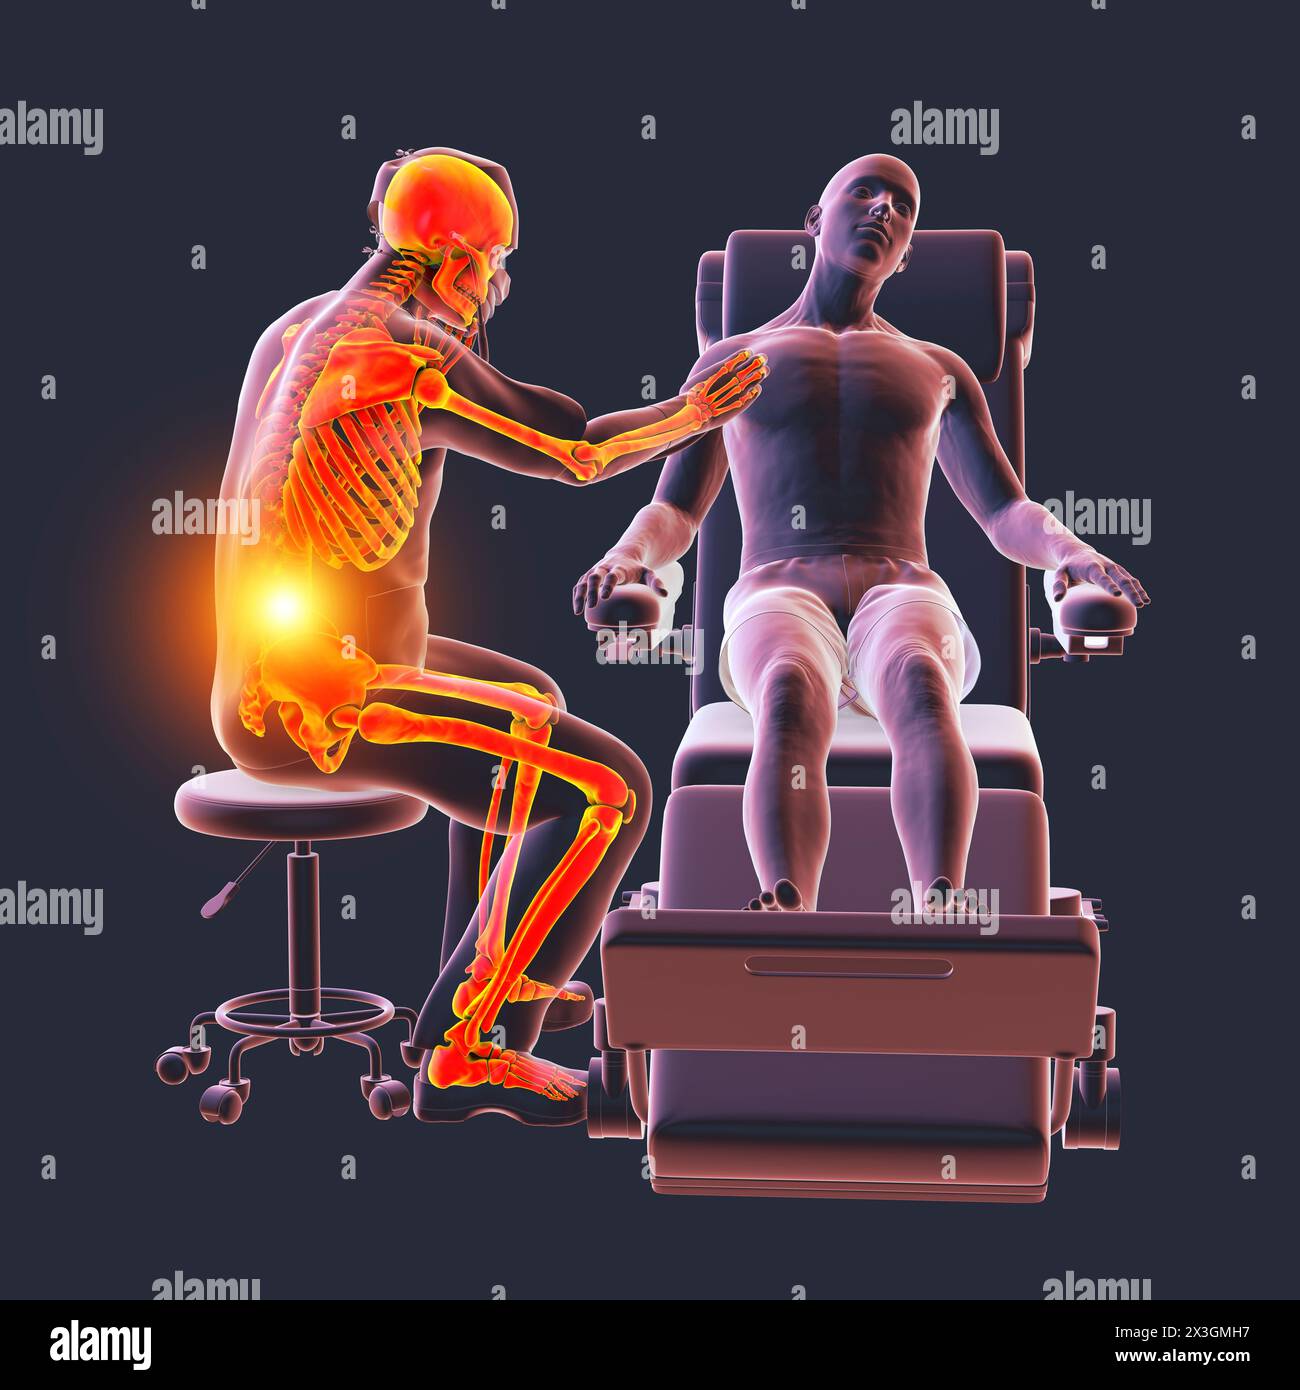 Illustration, die Arbeitsgefahren im Gesundheitswesen symbolisiert, zeigt ein medizinisches Fachpersonal, das Rückenschmerzen erlebt. Stockfoto